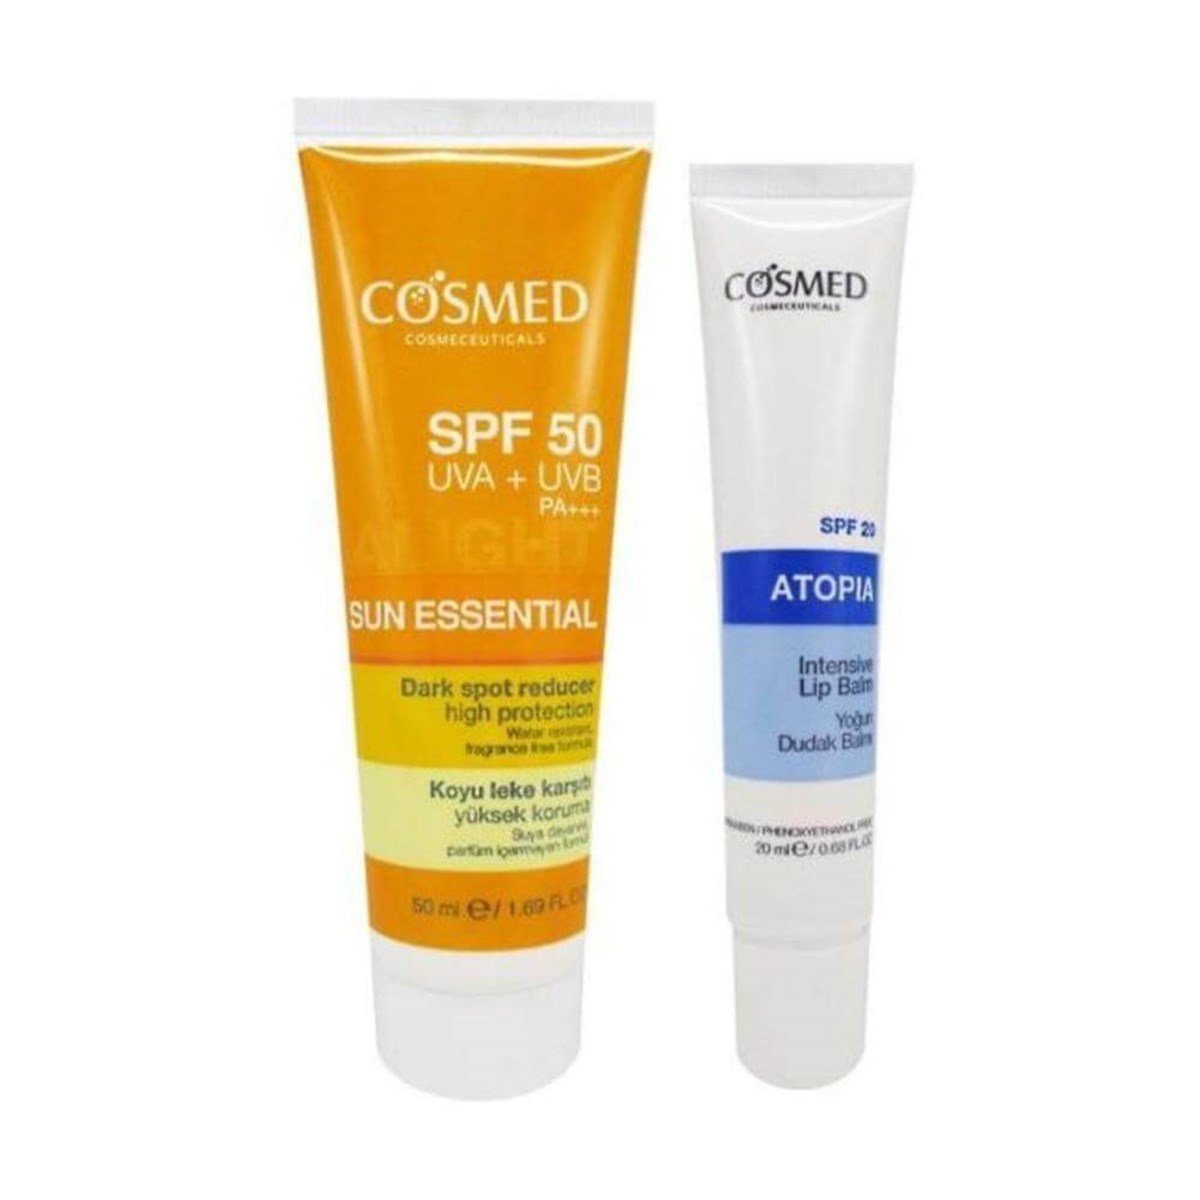 Cosmed Sun Essential Koyu Leke Karşıtı Yüksek Koruma Güneş Kremi SPF50 50  ml + Cosmed Atopia Dudak Balmı DepoEczanem.com | Dermokozmetik Cilt & Vücut  Bakımı, Vitamin & Mineral – Takviye Edici Gıda